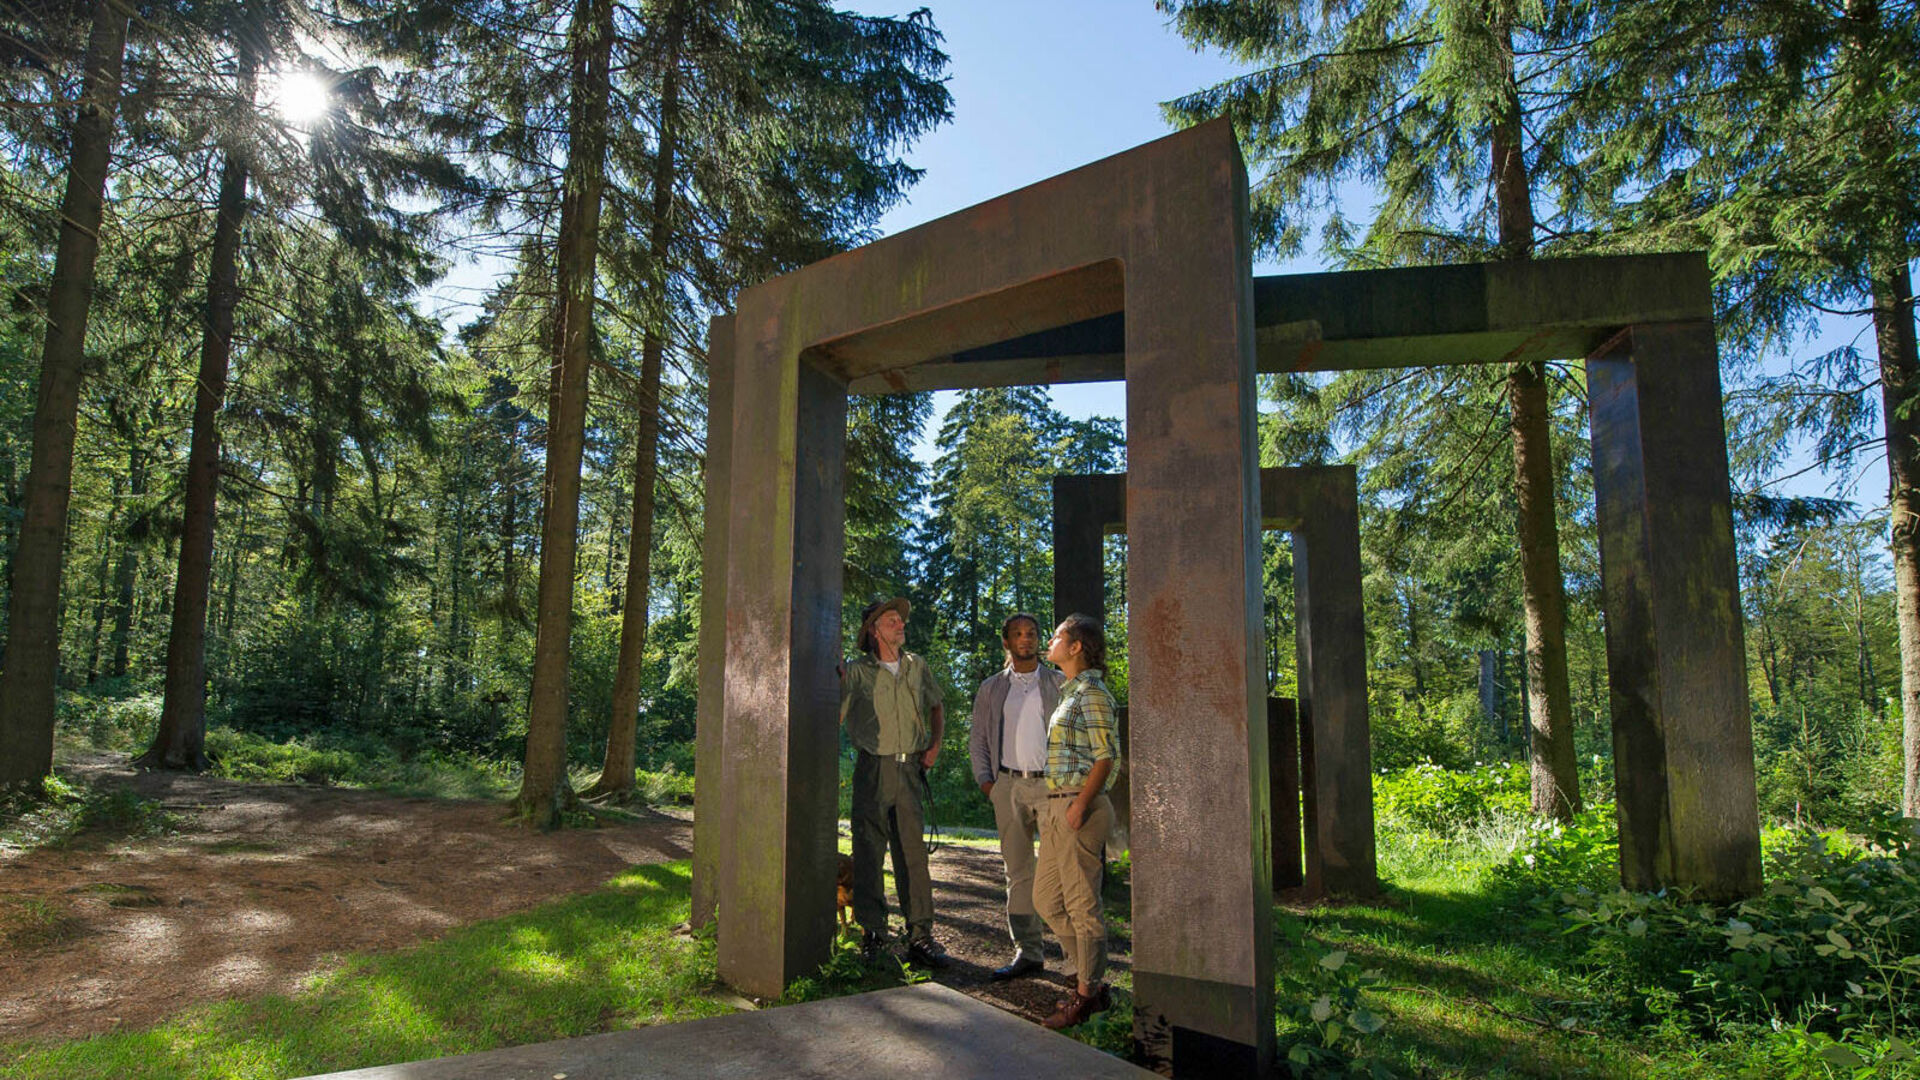 Skulptur "Kein leichtes Spiel" am WaldSkulpturenWeg bei Schanze im Sauerland